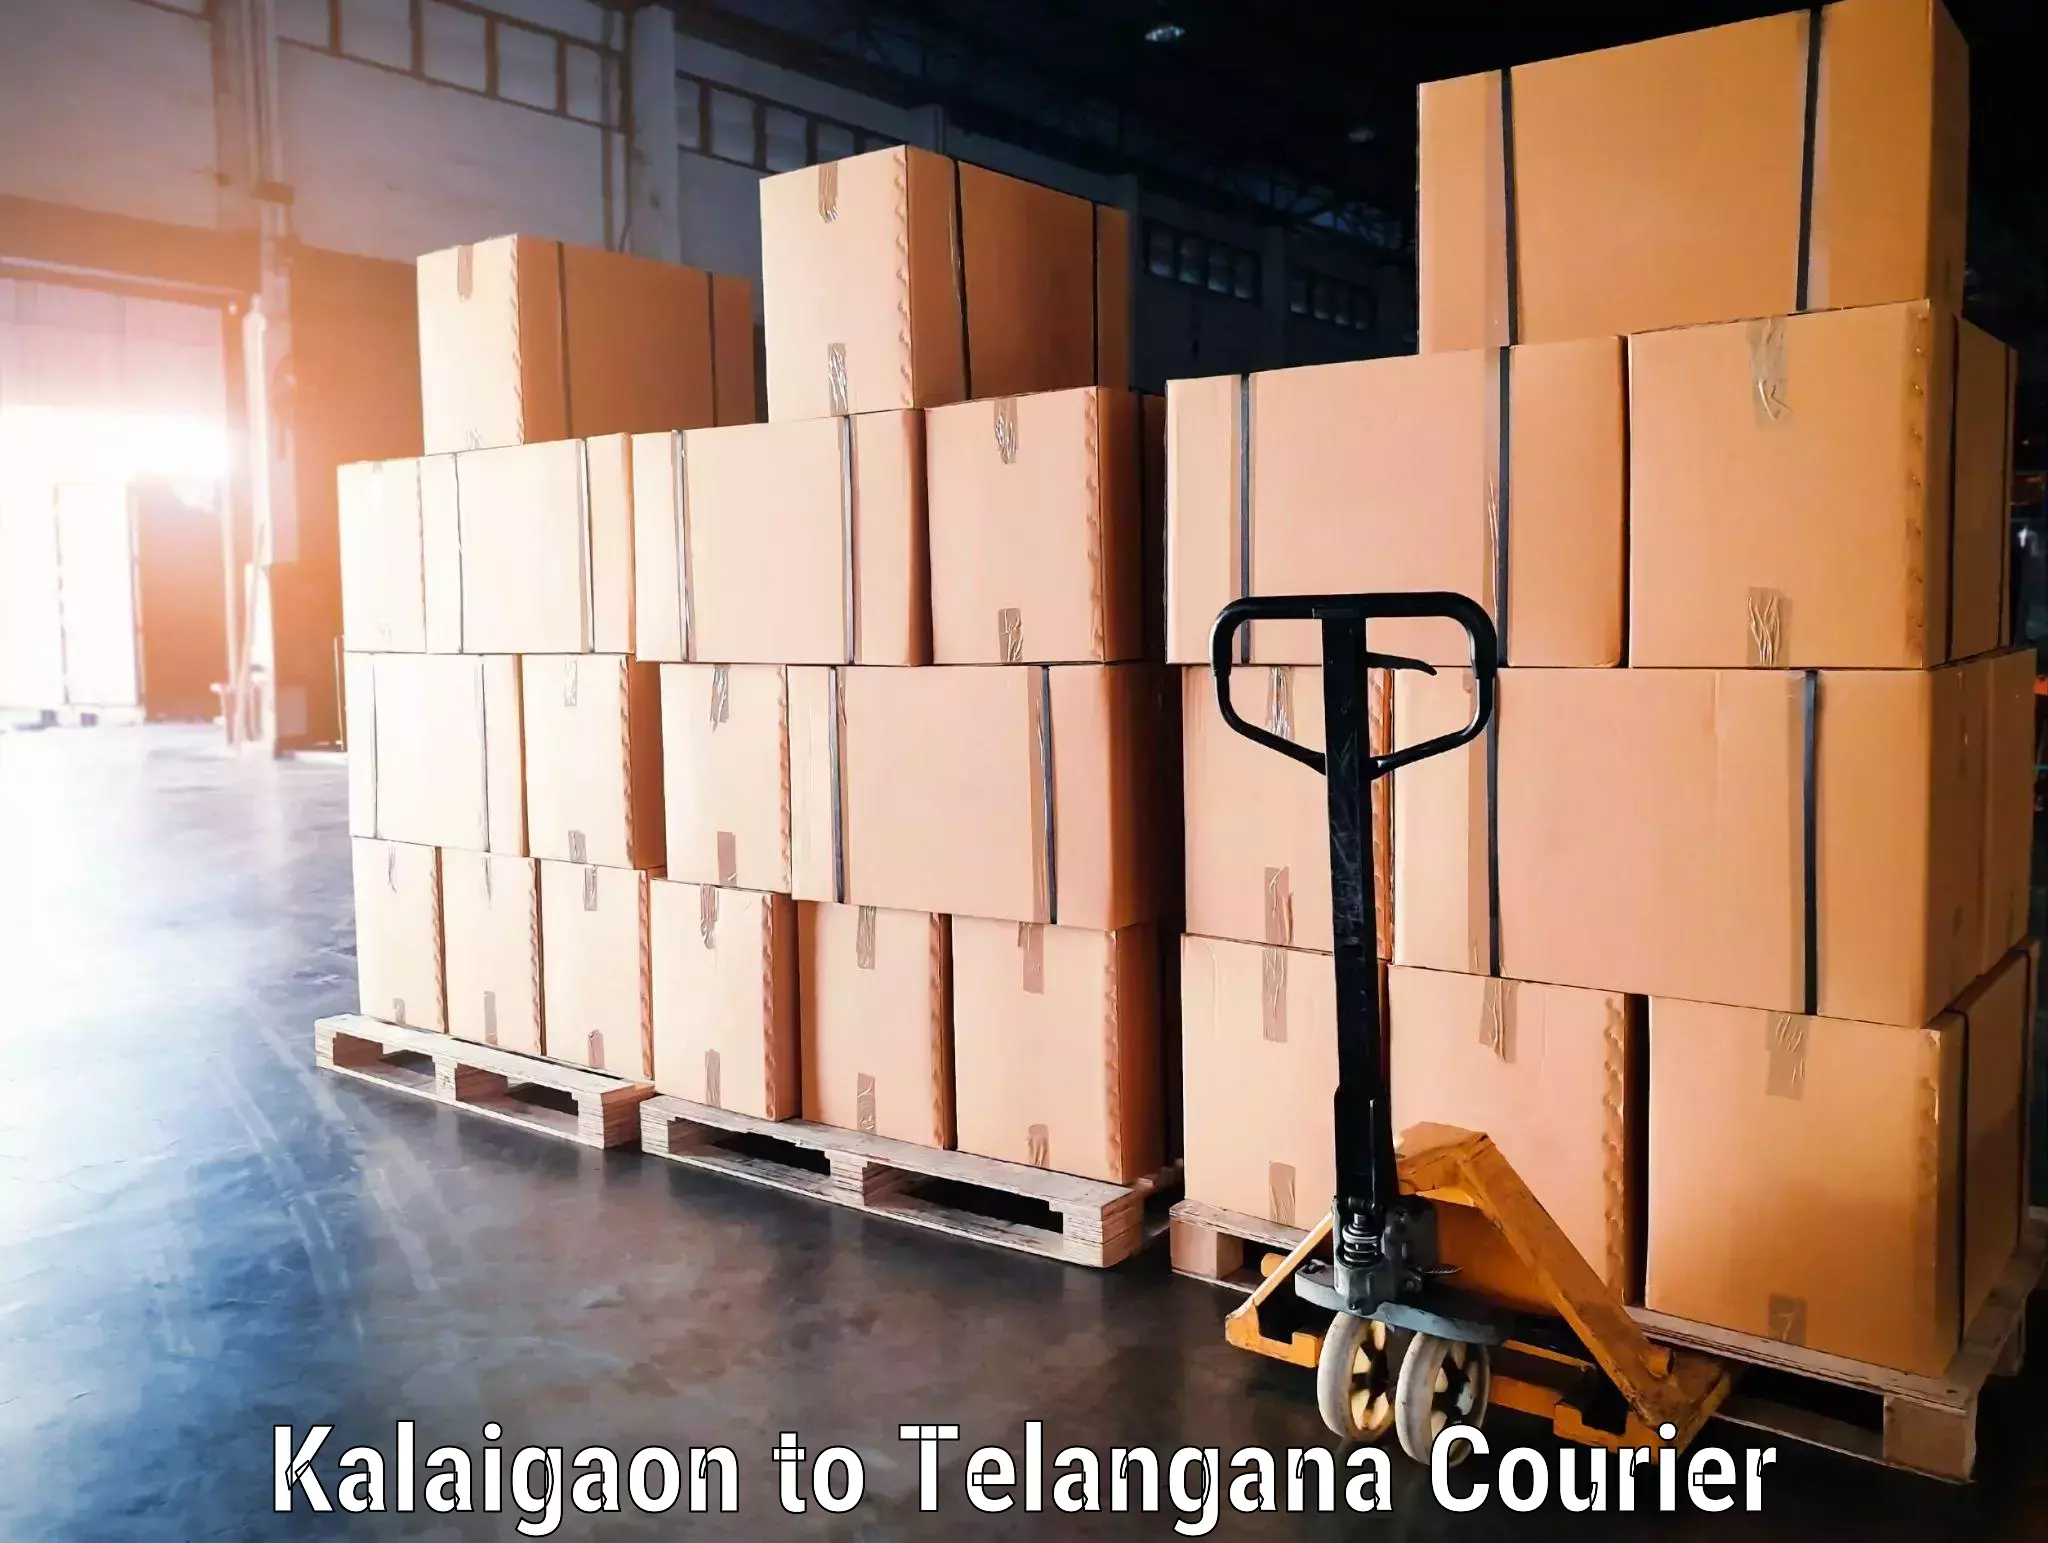 Urgent luggage shipment Kalaigaon to Kothur